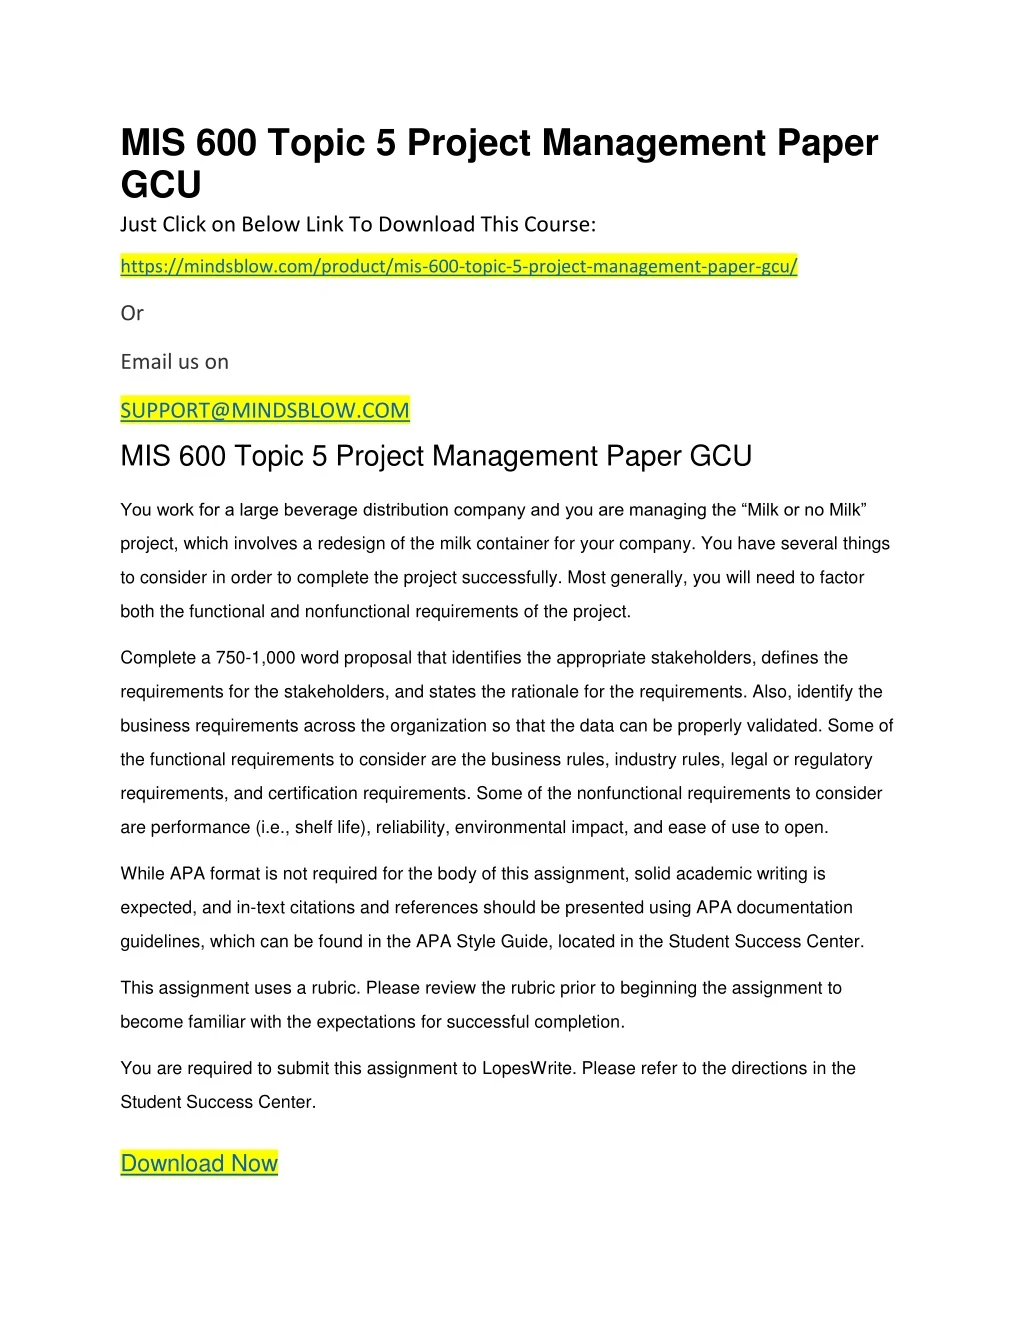 mis 600 topic 5 project management paper gcu just